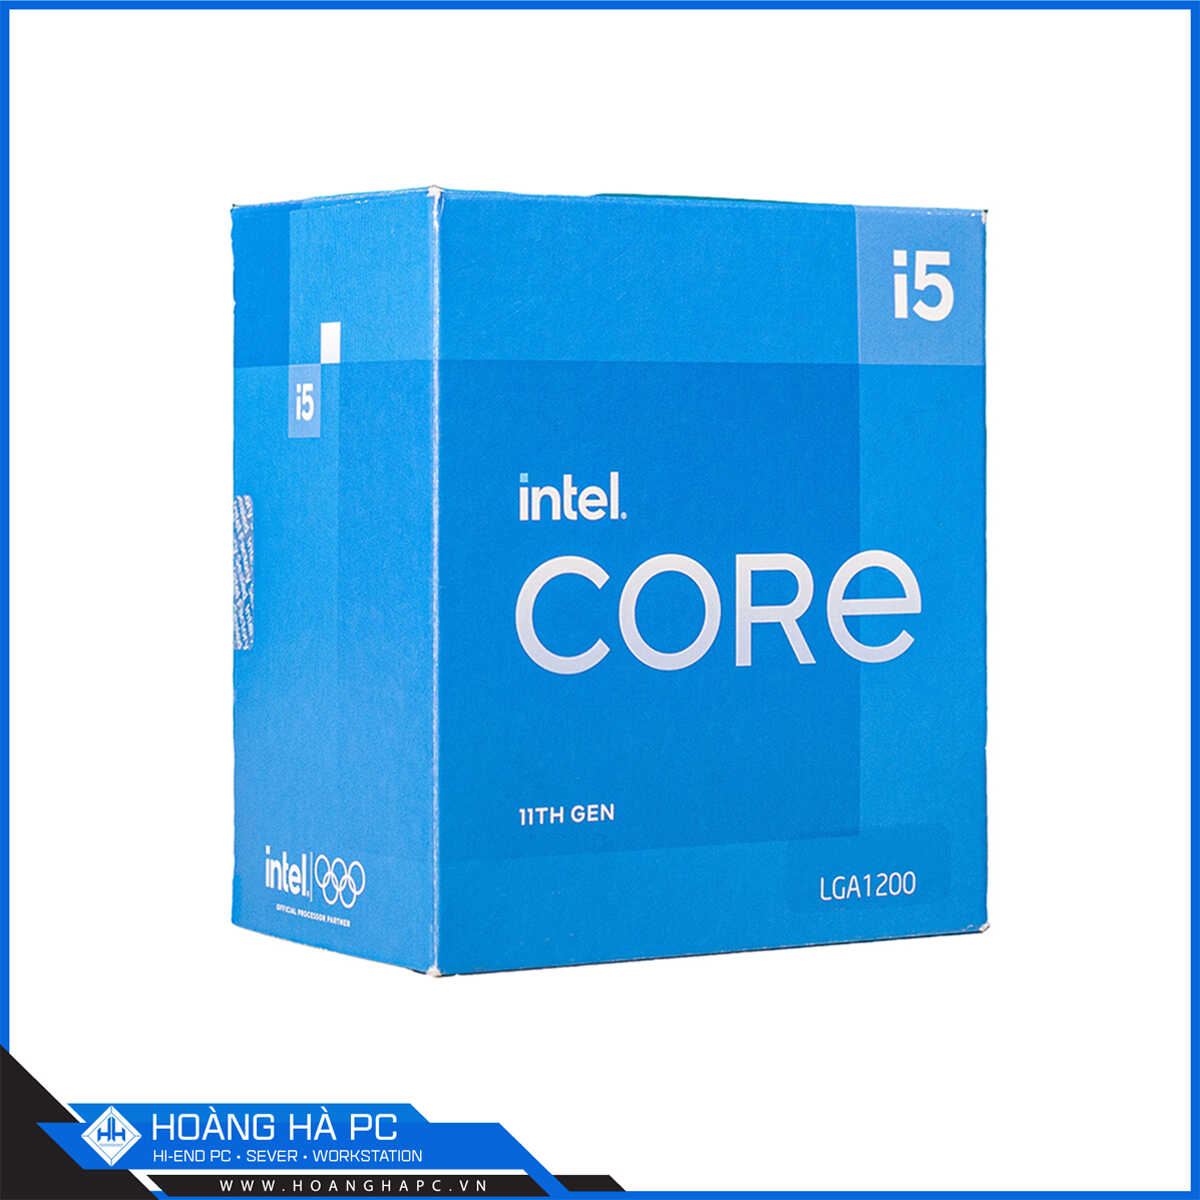 Chọn Hoàng Hà PC để có trong tay sản phẩm CPU Intel i5 thế hệ mới chính hãng